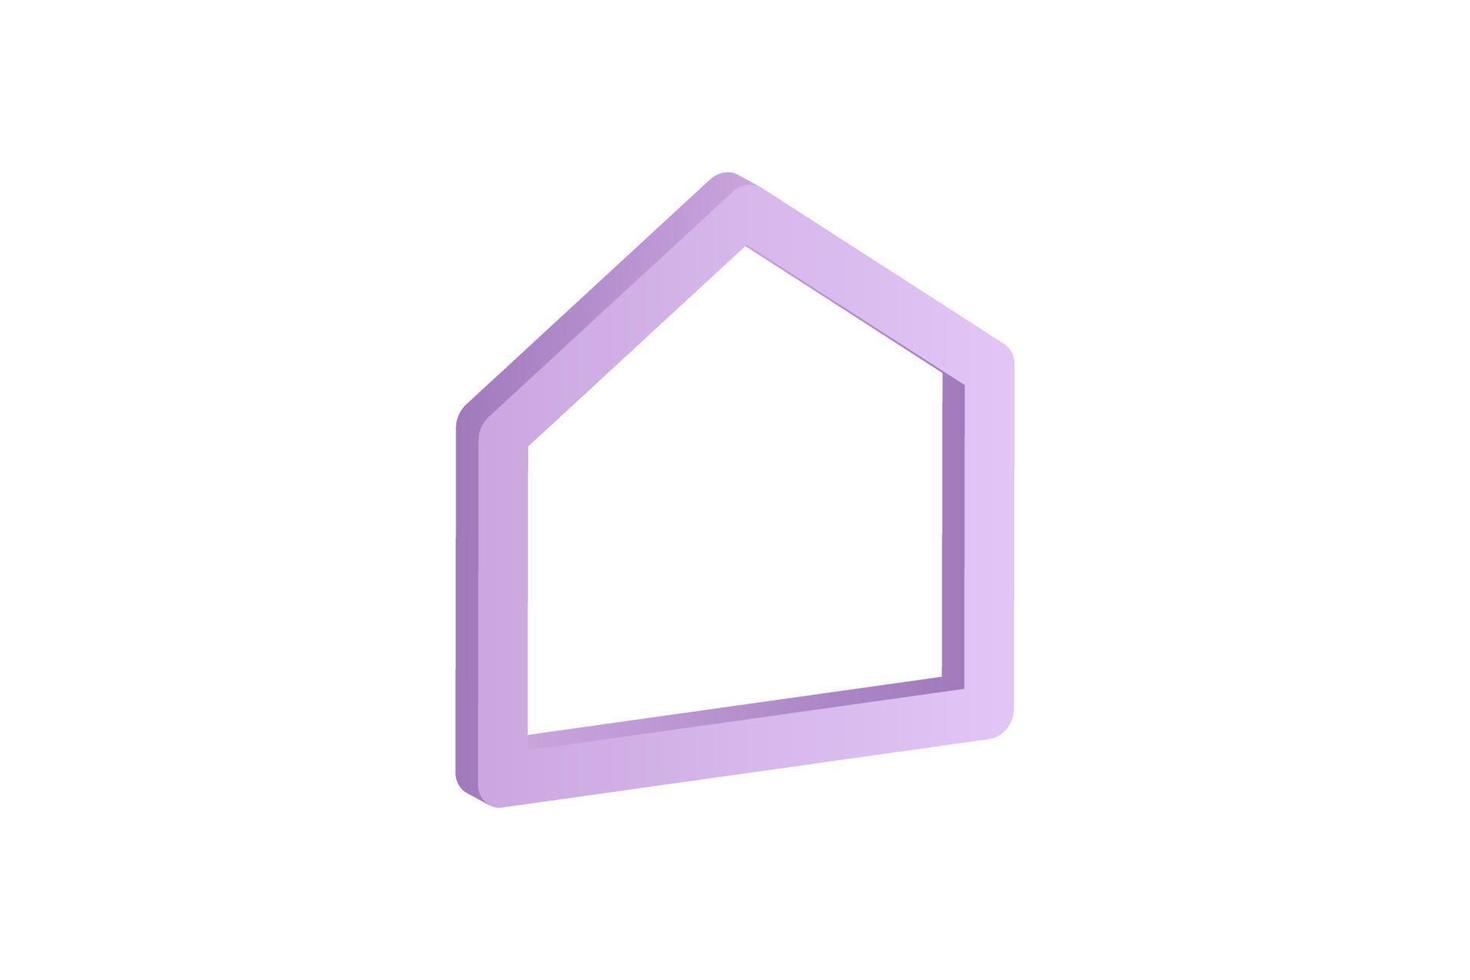 ilustrações de design de ícone 3d de casa realista vetor